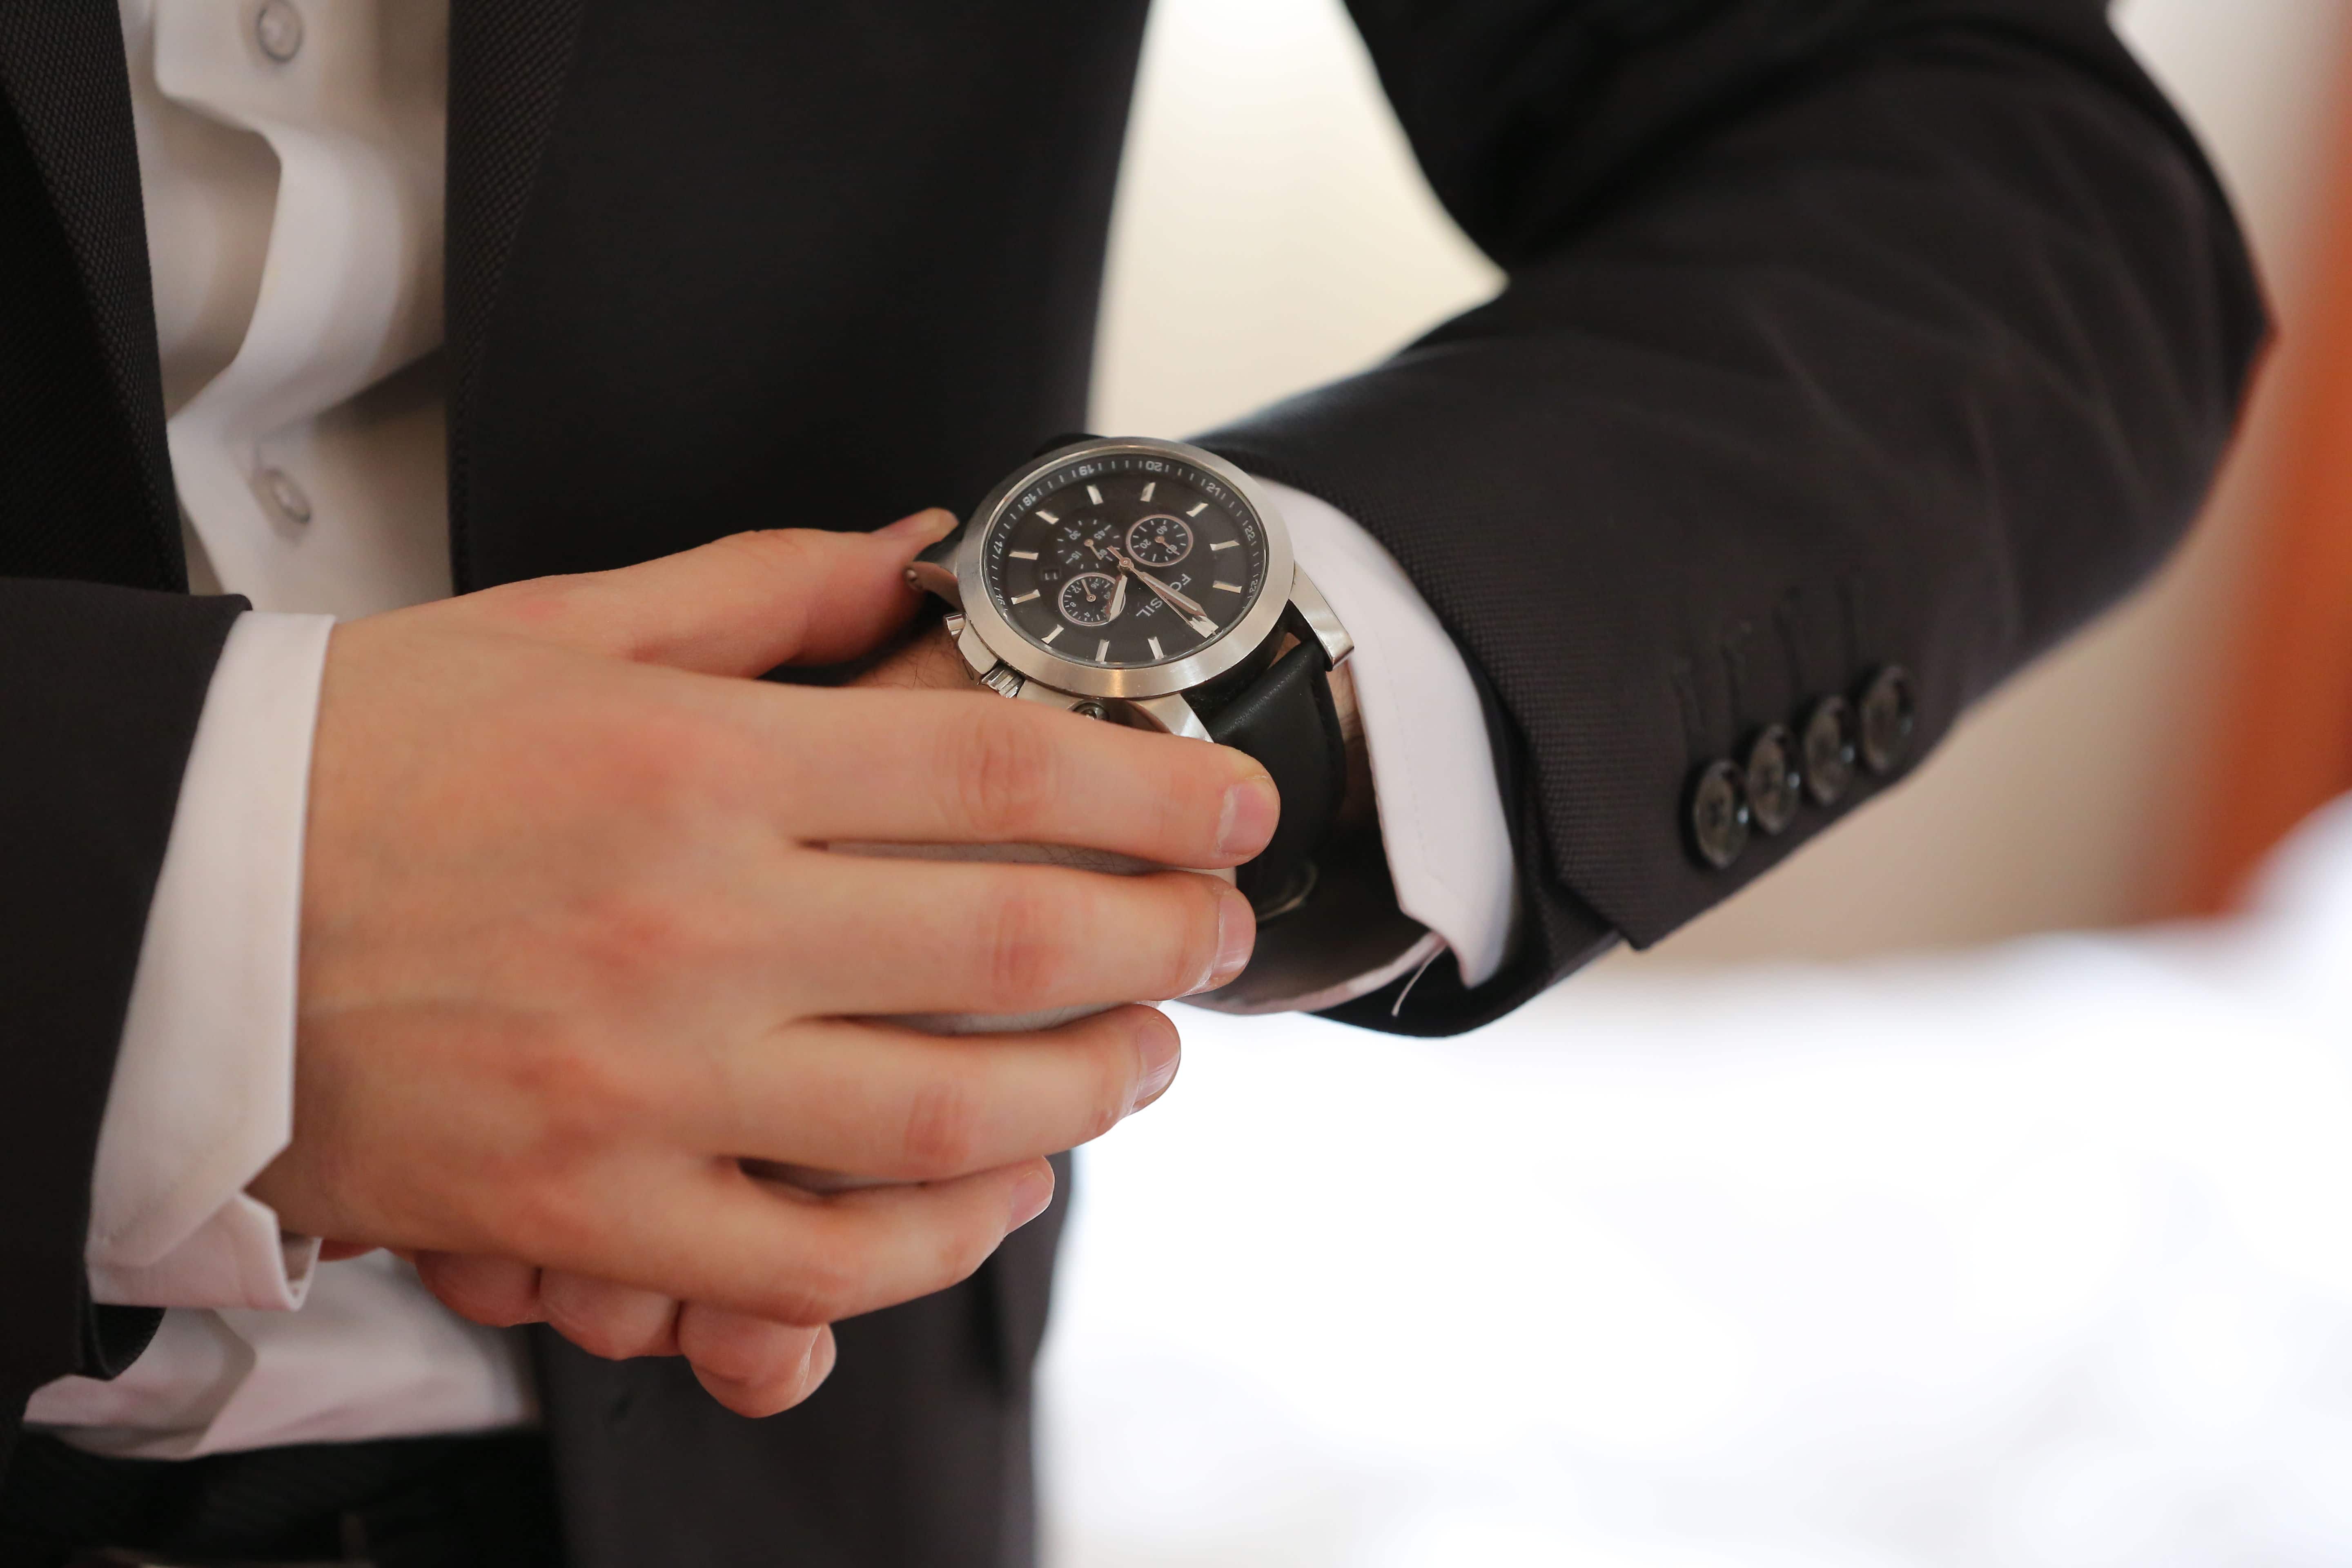 Наручные часы работы. Наручные часы на руке. Часы ручные на руке. Мужчина с часами на руке. Мужская рука с часами.